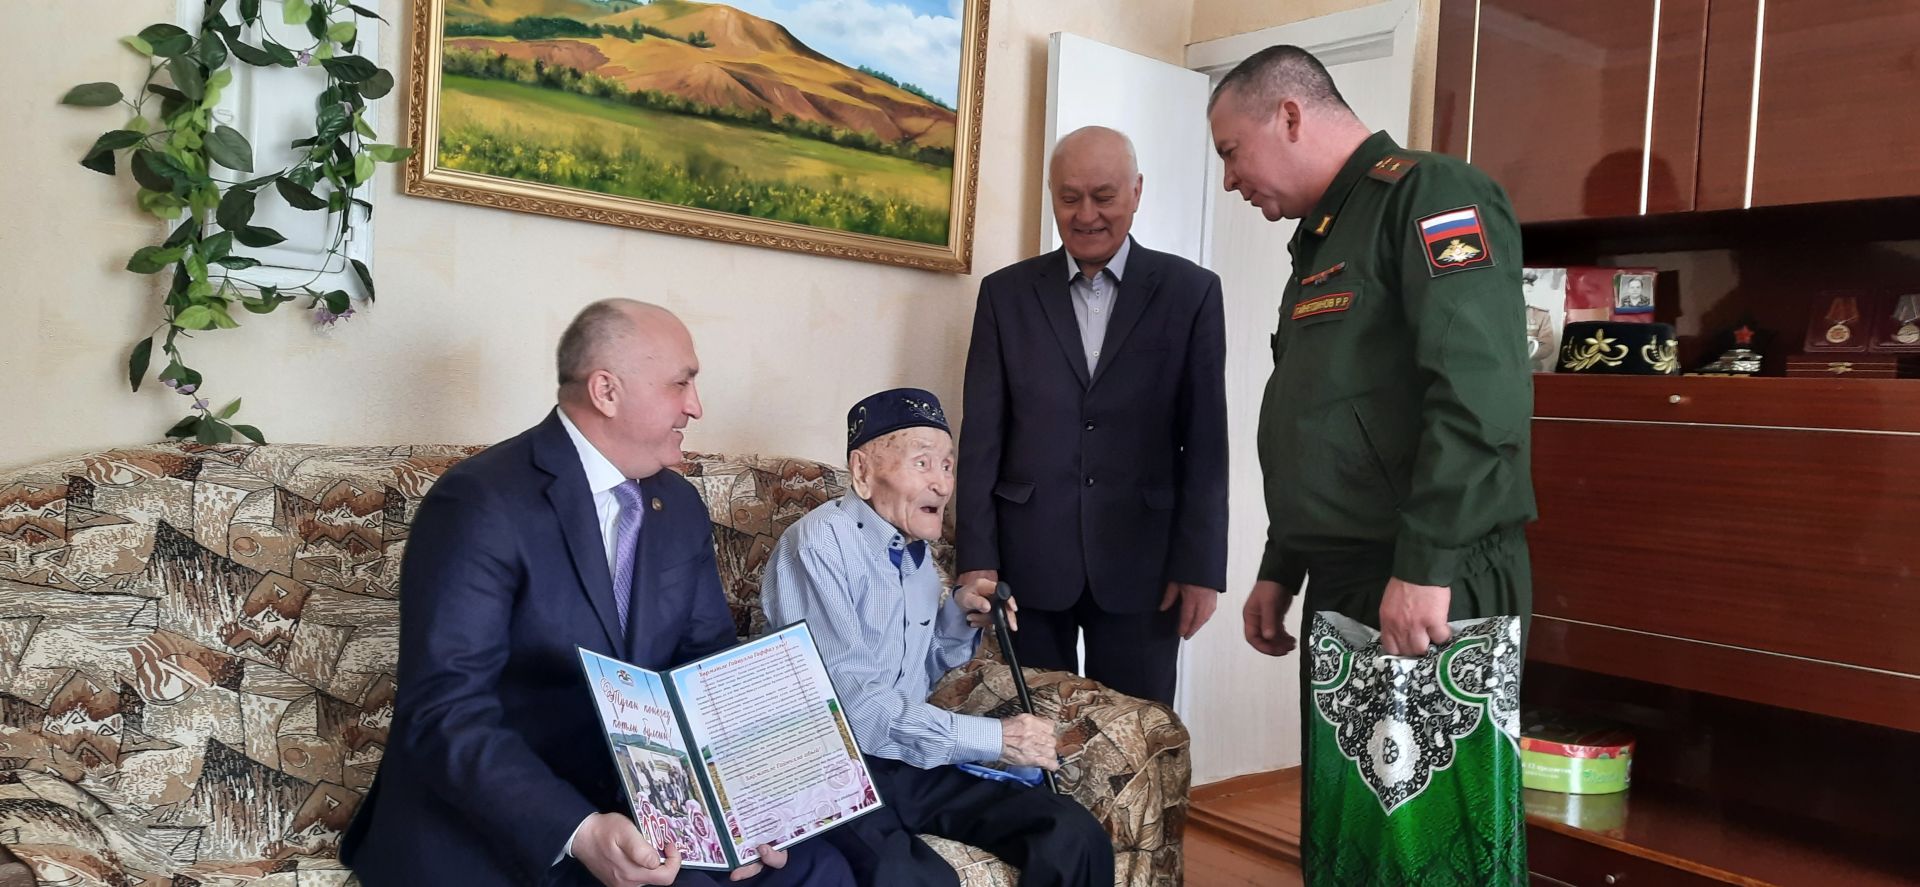 Ветеран войны из Азнакаево встретил свою 103-ю весну